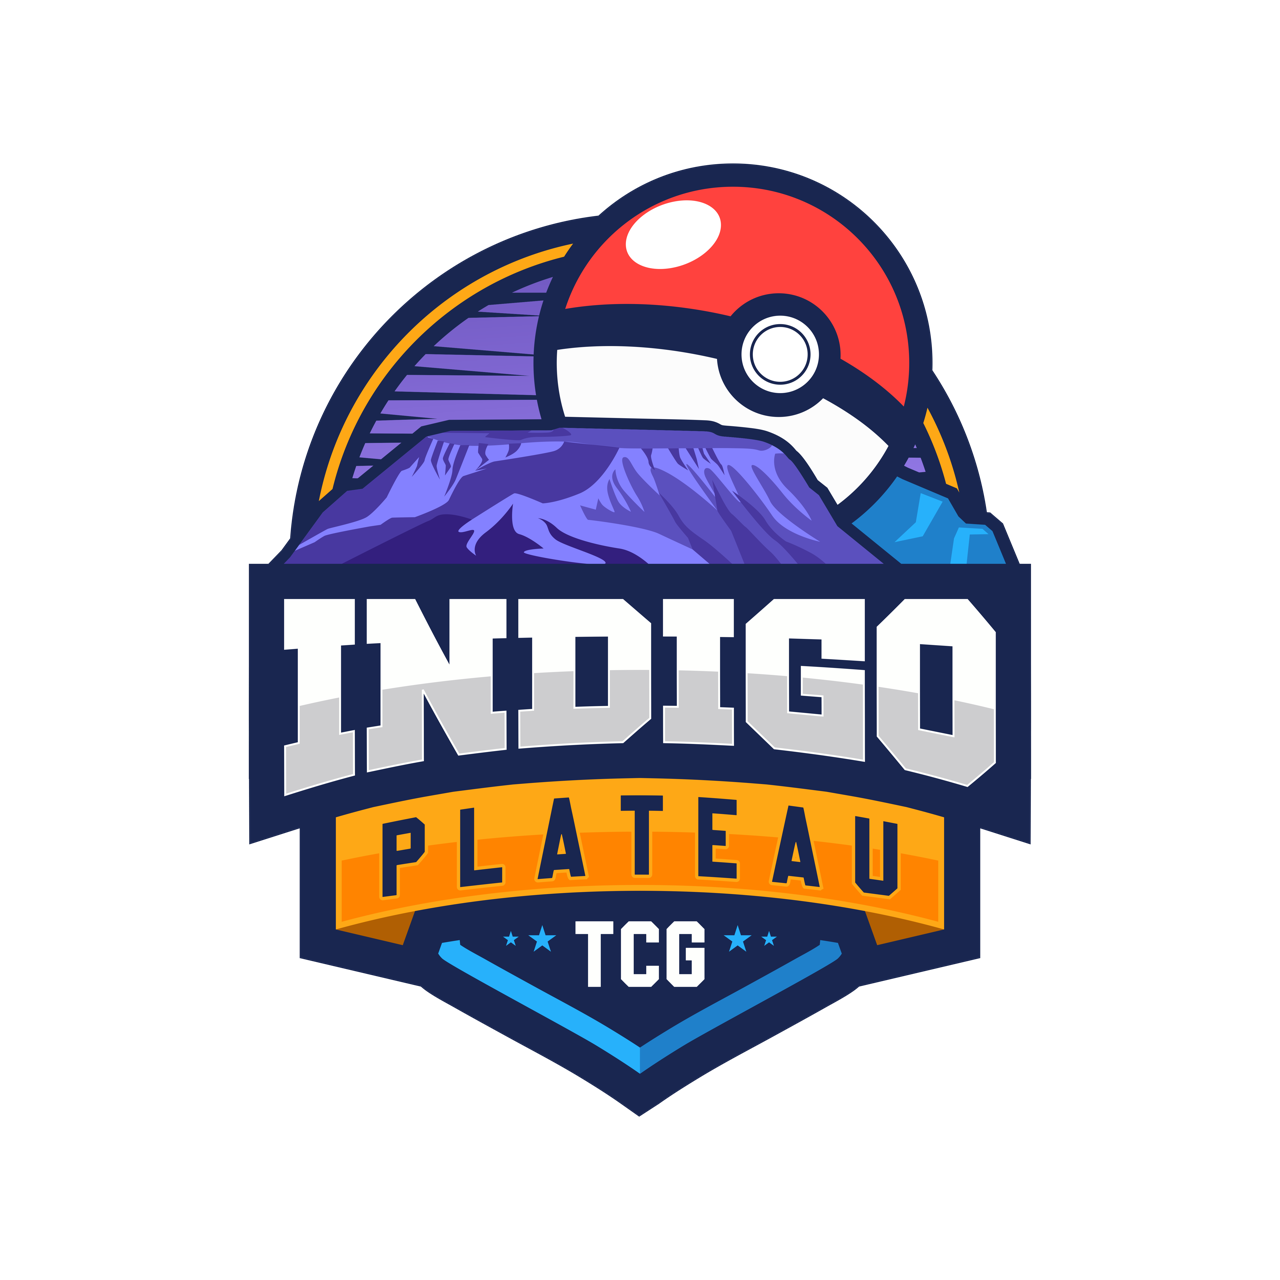 Indigo Plateau TCG